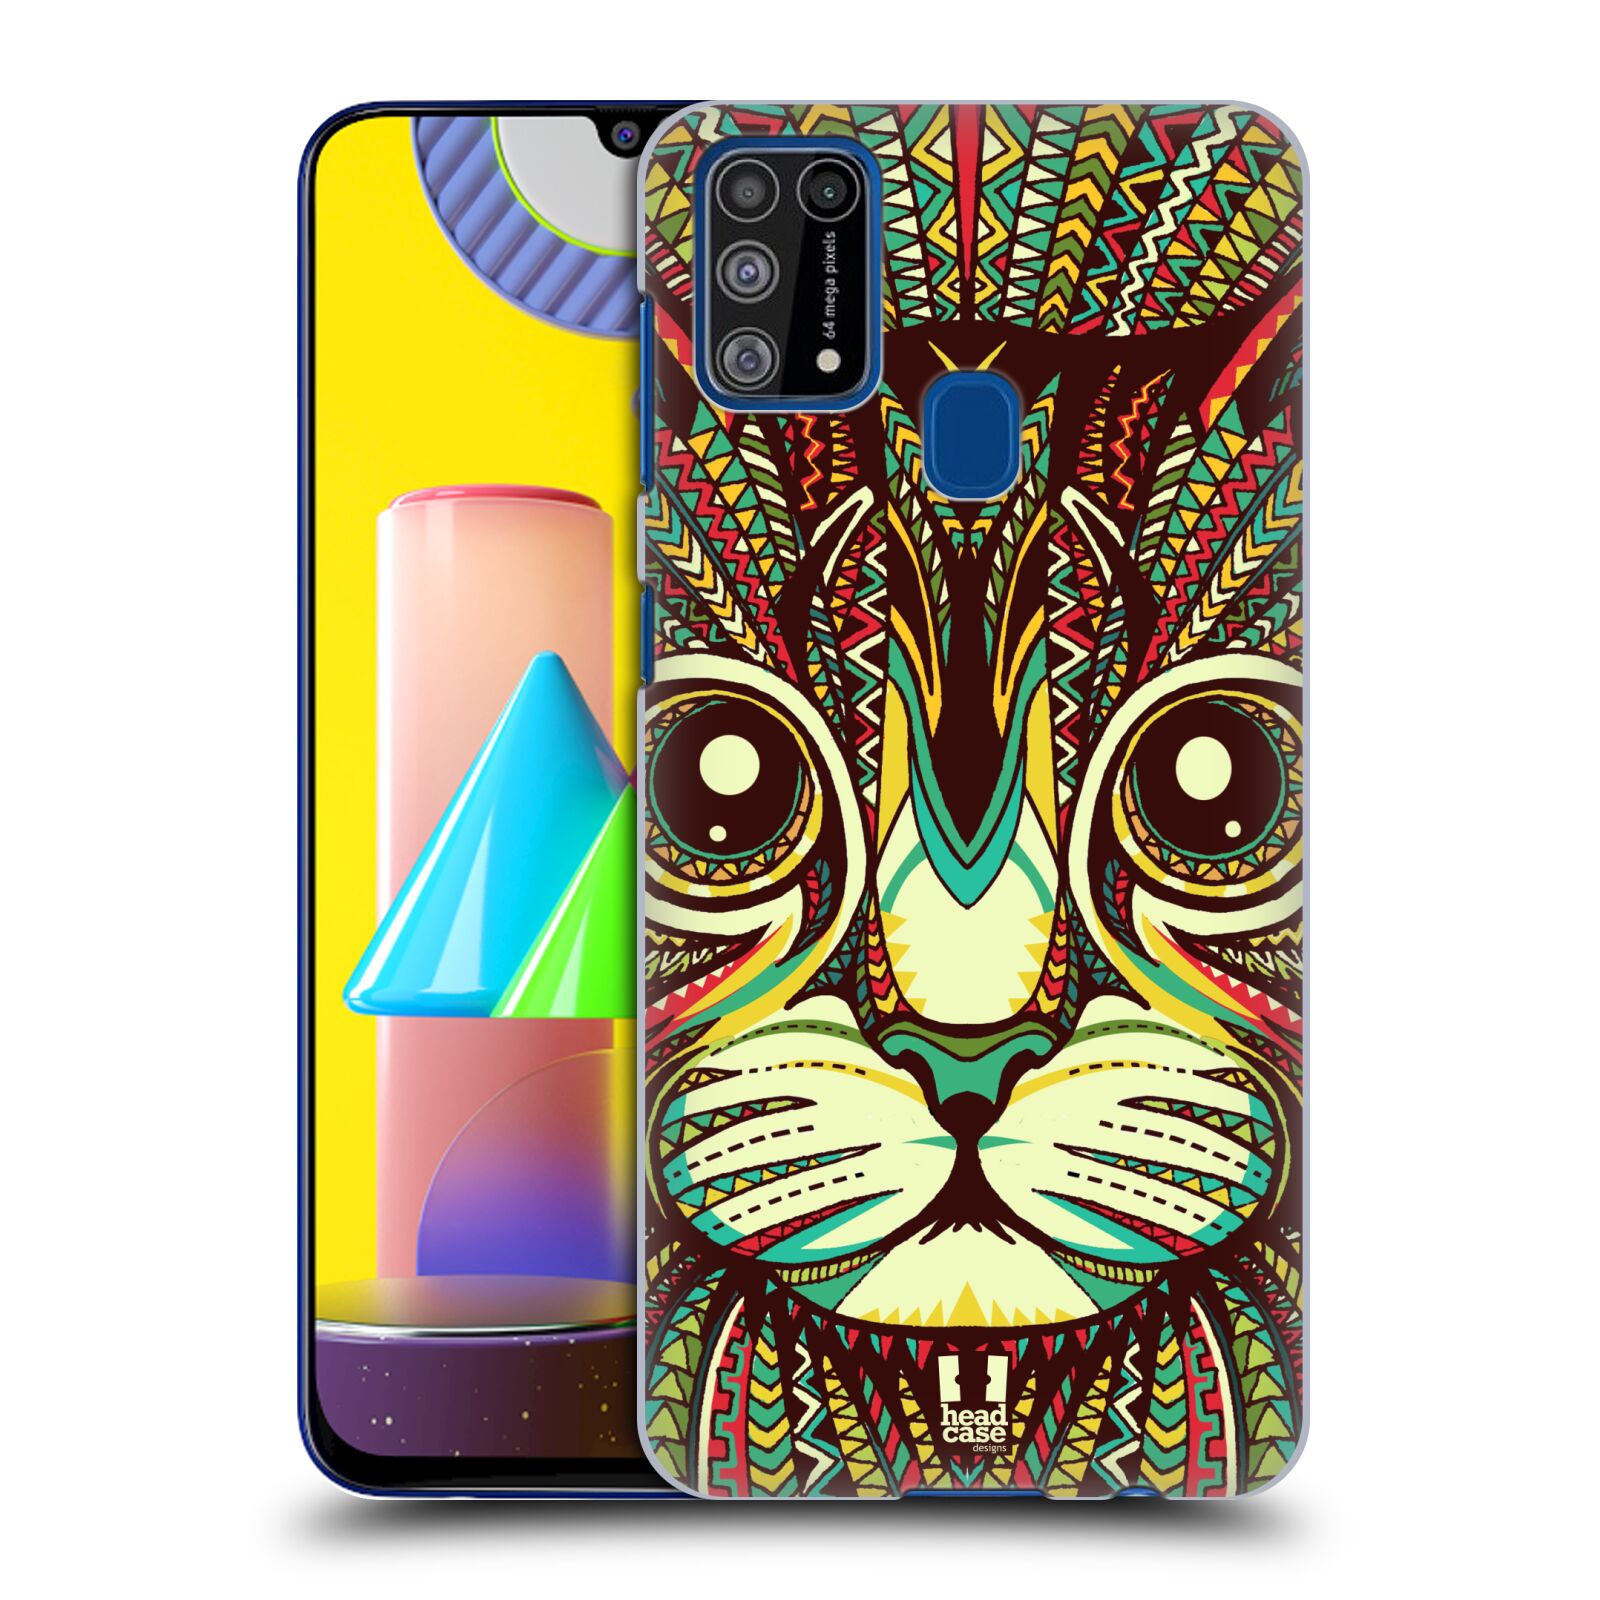 Plastový obal HEAD CASE na mobil Samsung Galaxy M31 vzor Aztécký motiv zvíře 2 kotě